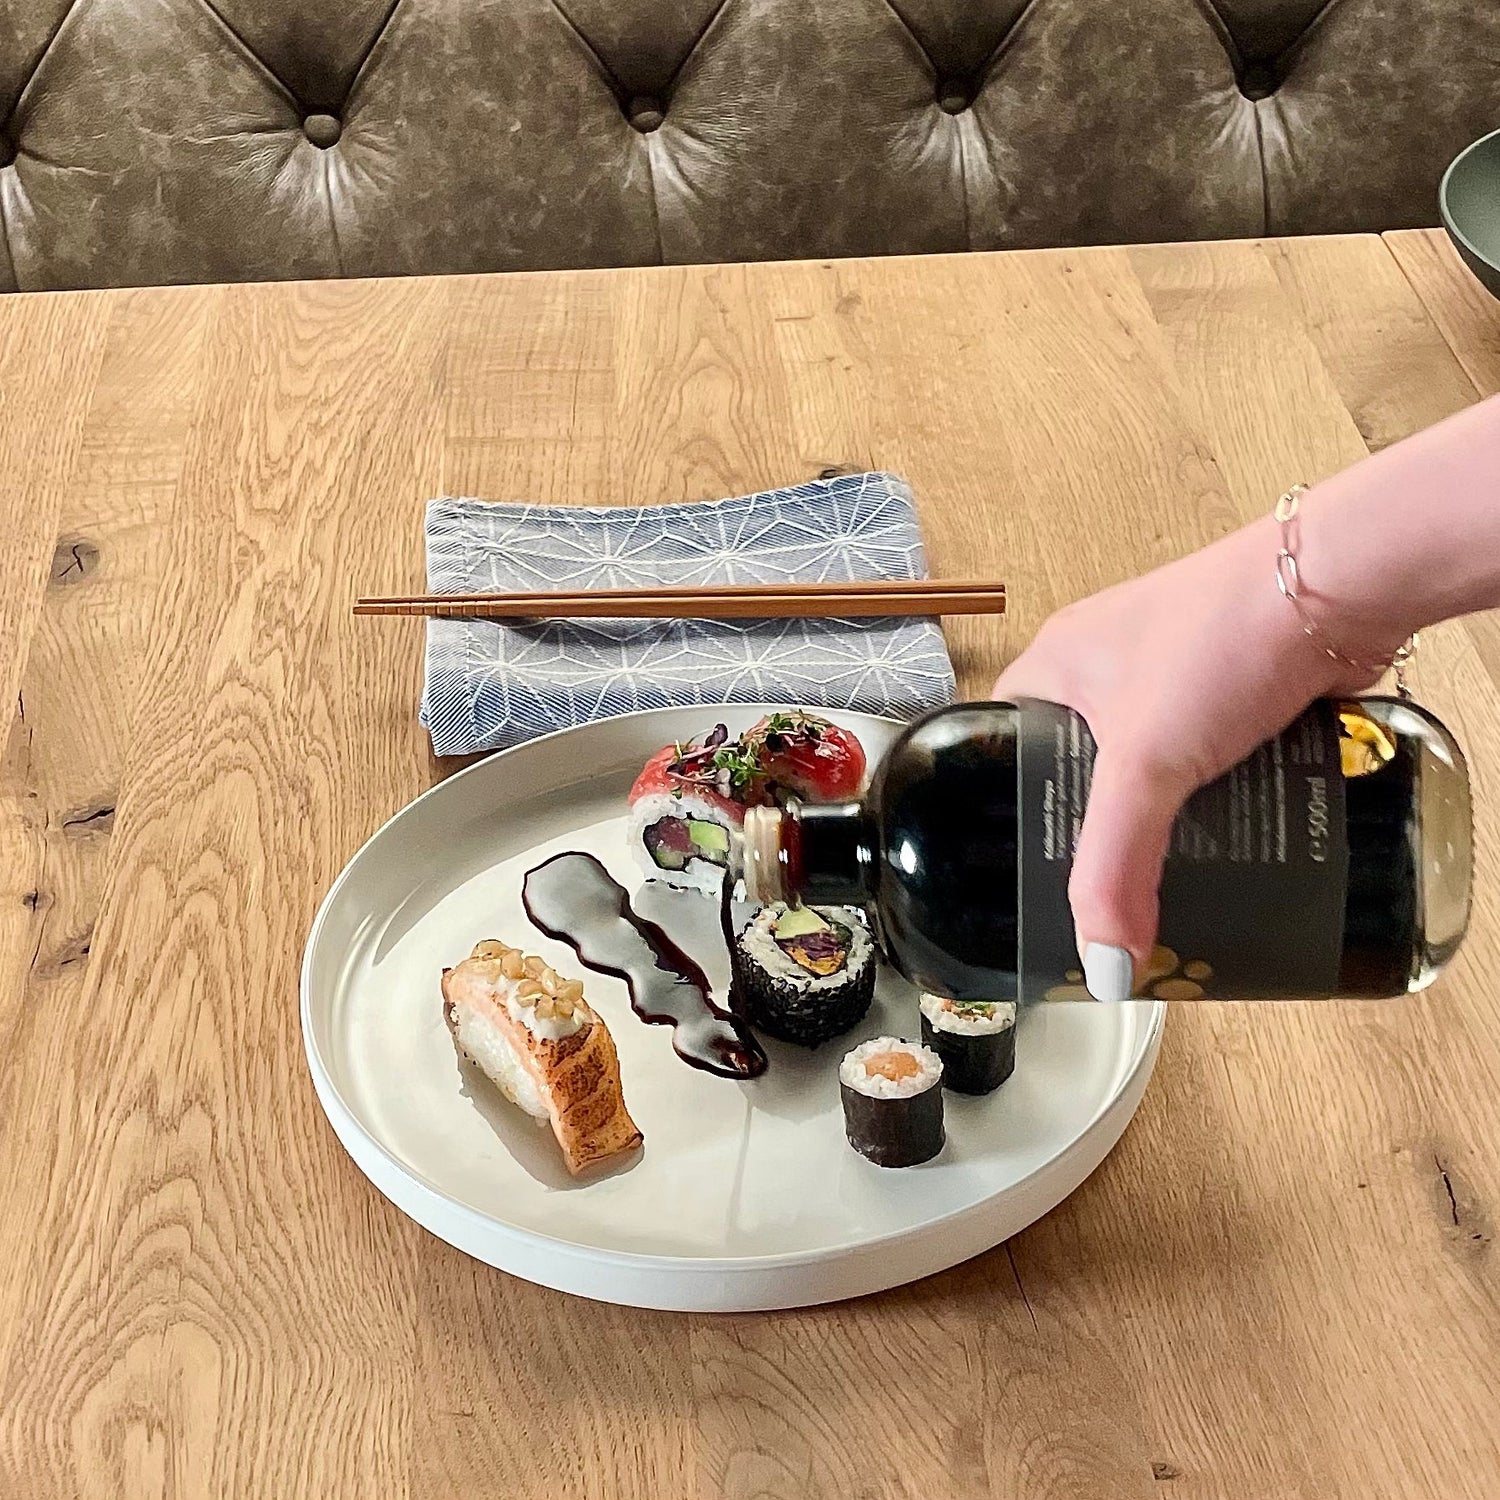 Holztisch mit weißem Teller mit Sushi Variationen. Daneben Tuch mit Essstäbchen. Eine Hand gießt aus einer Flasche Sojasauce auf den Teller.